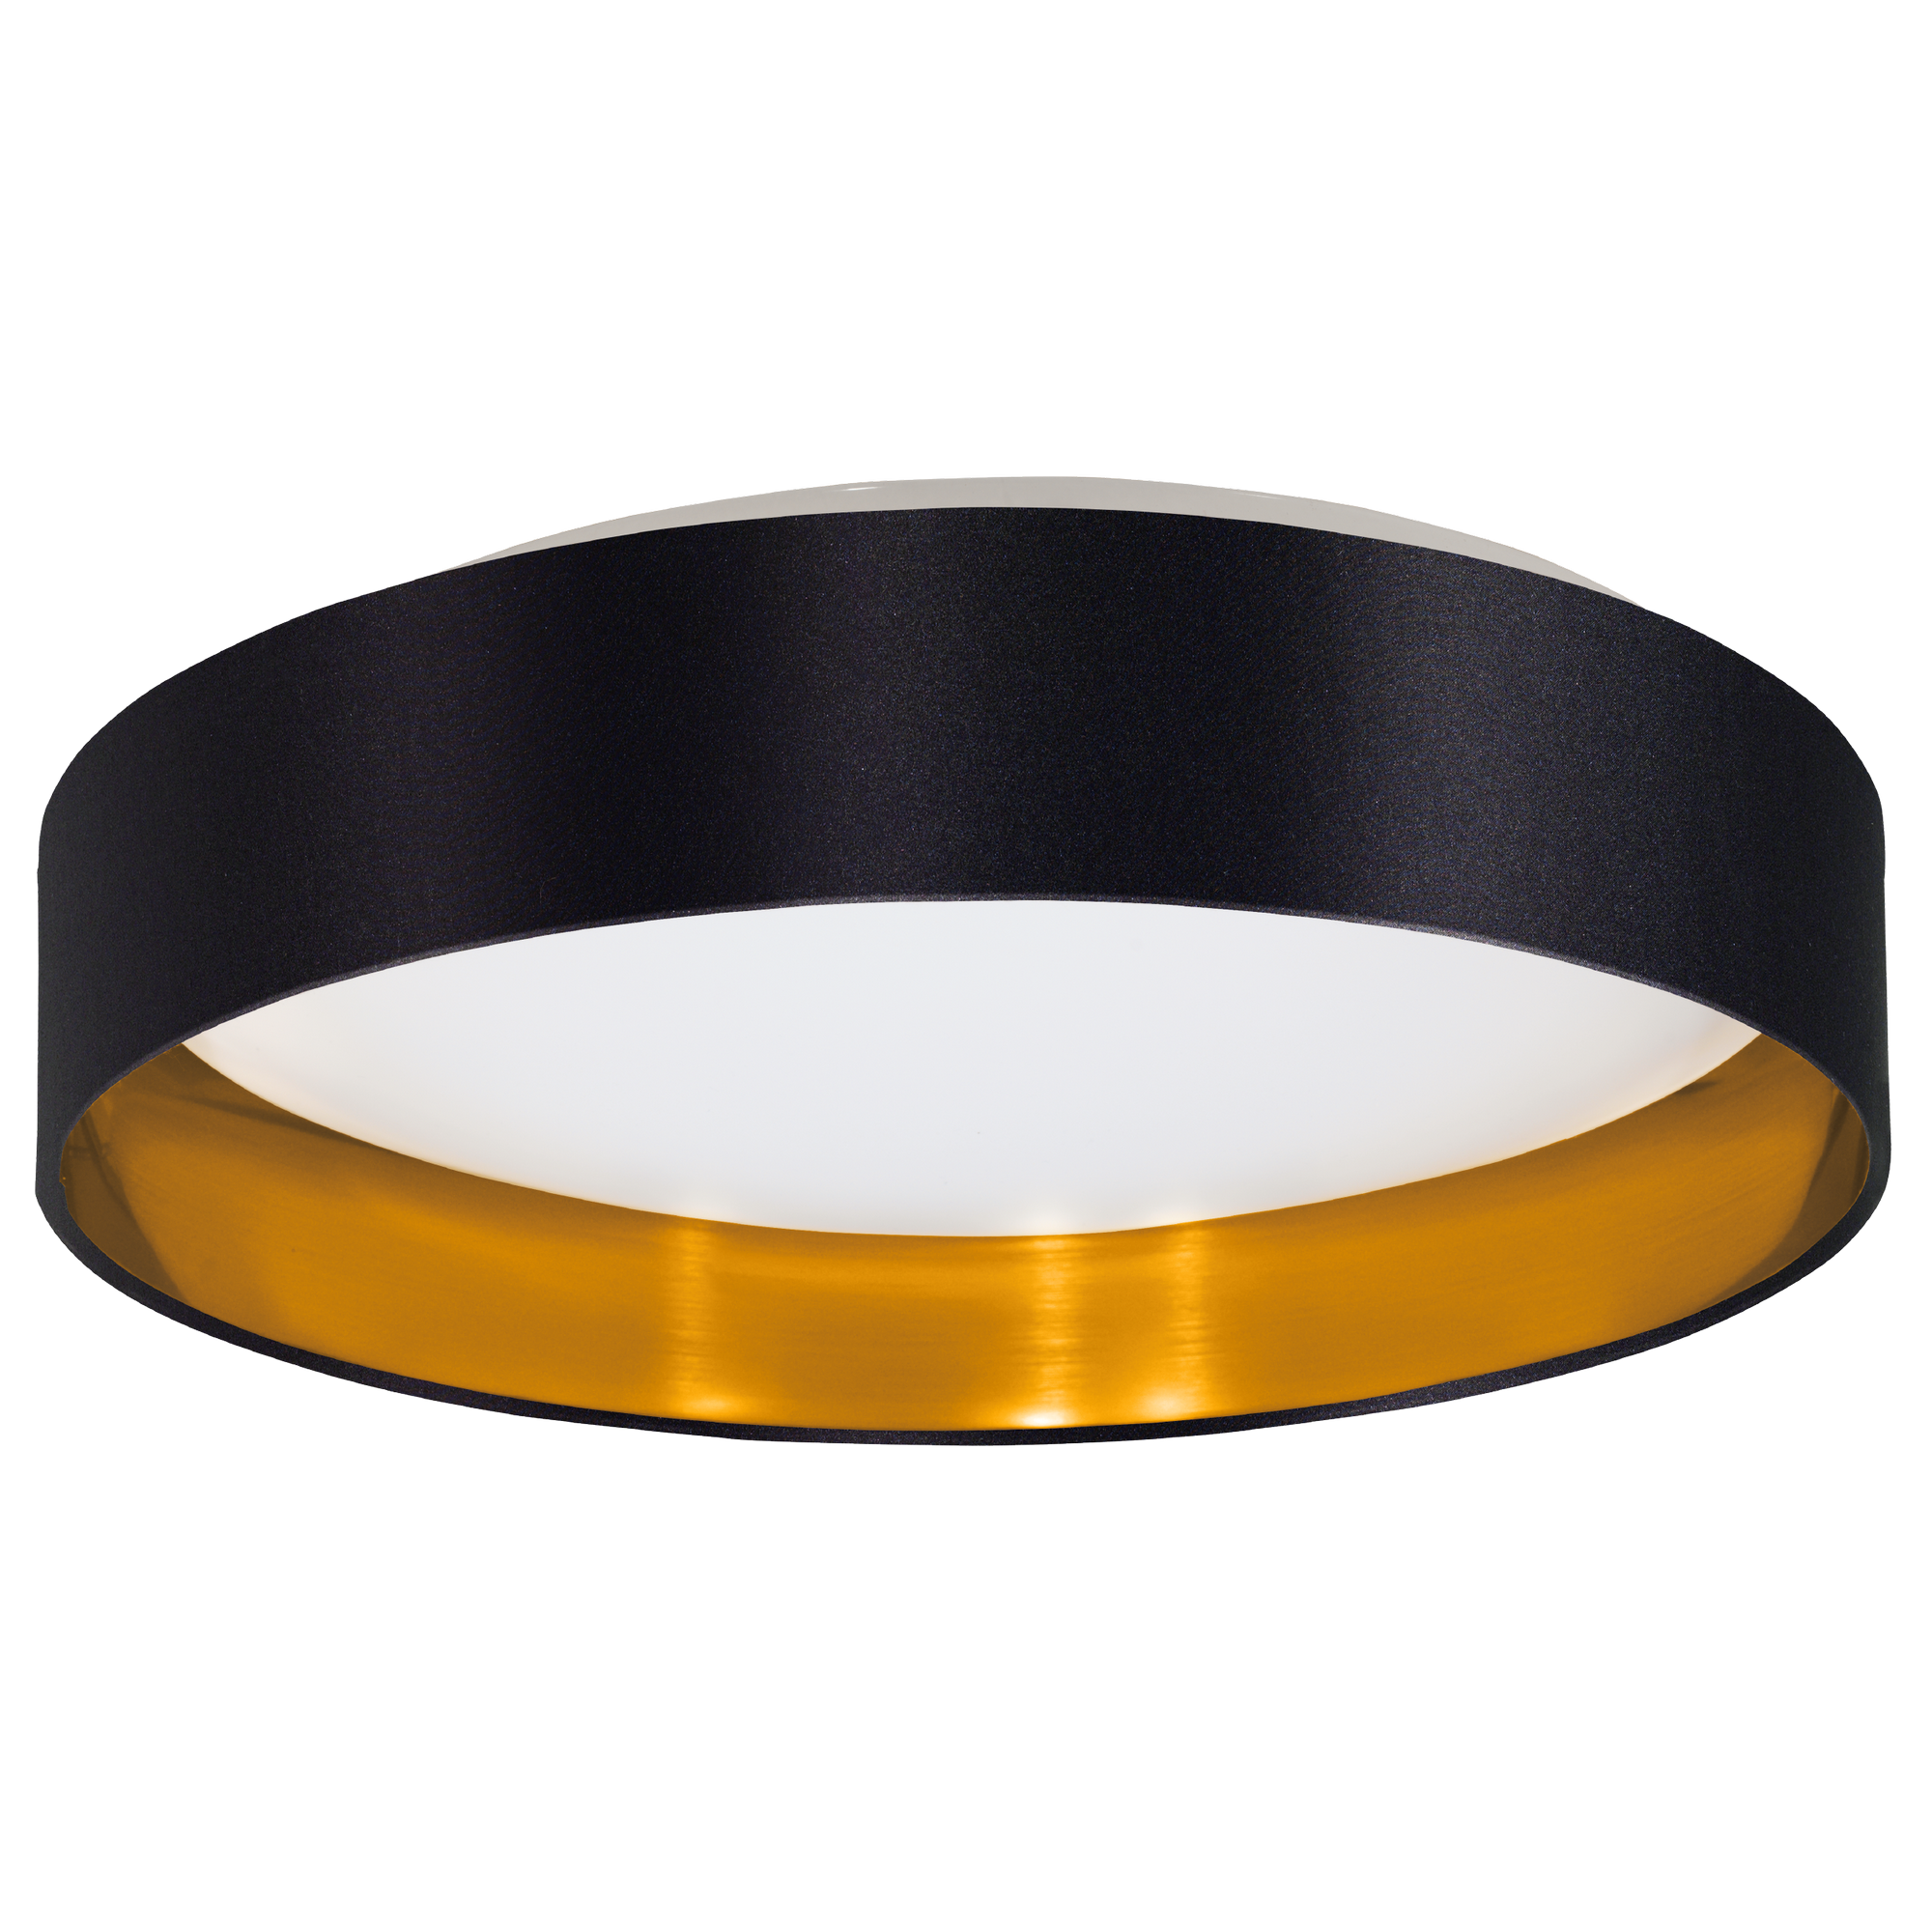 LED-Deckenleuchte 'Maserlo 2' schwarz/gold Ø 38 cm 21,6 W + product picture